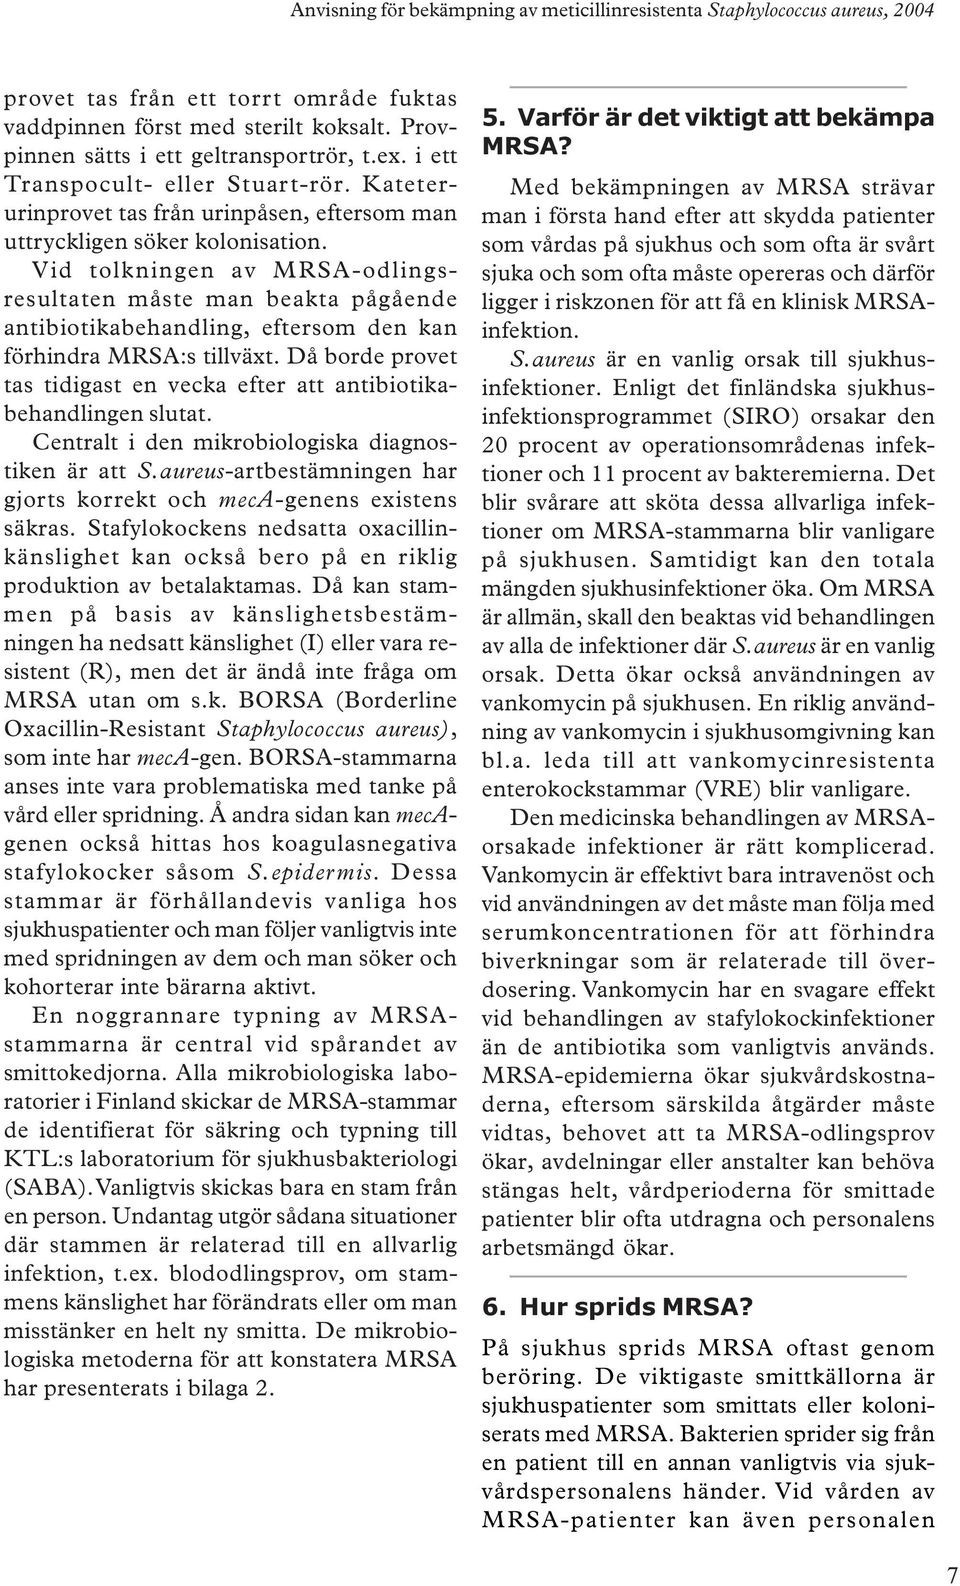 Vid tolkningen av MRSA-odlingsresultaten måste man beakta pågående antibiotikabehandling, eftersom den kan förhindra MRSA:s tillväxt.